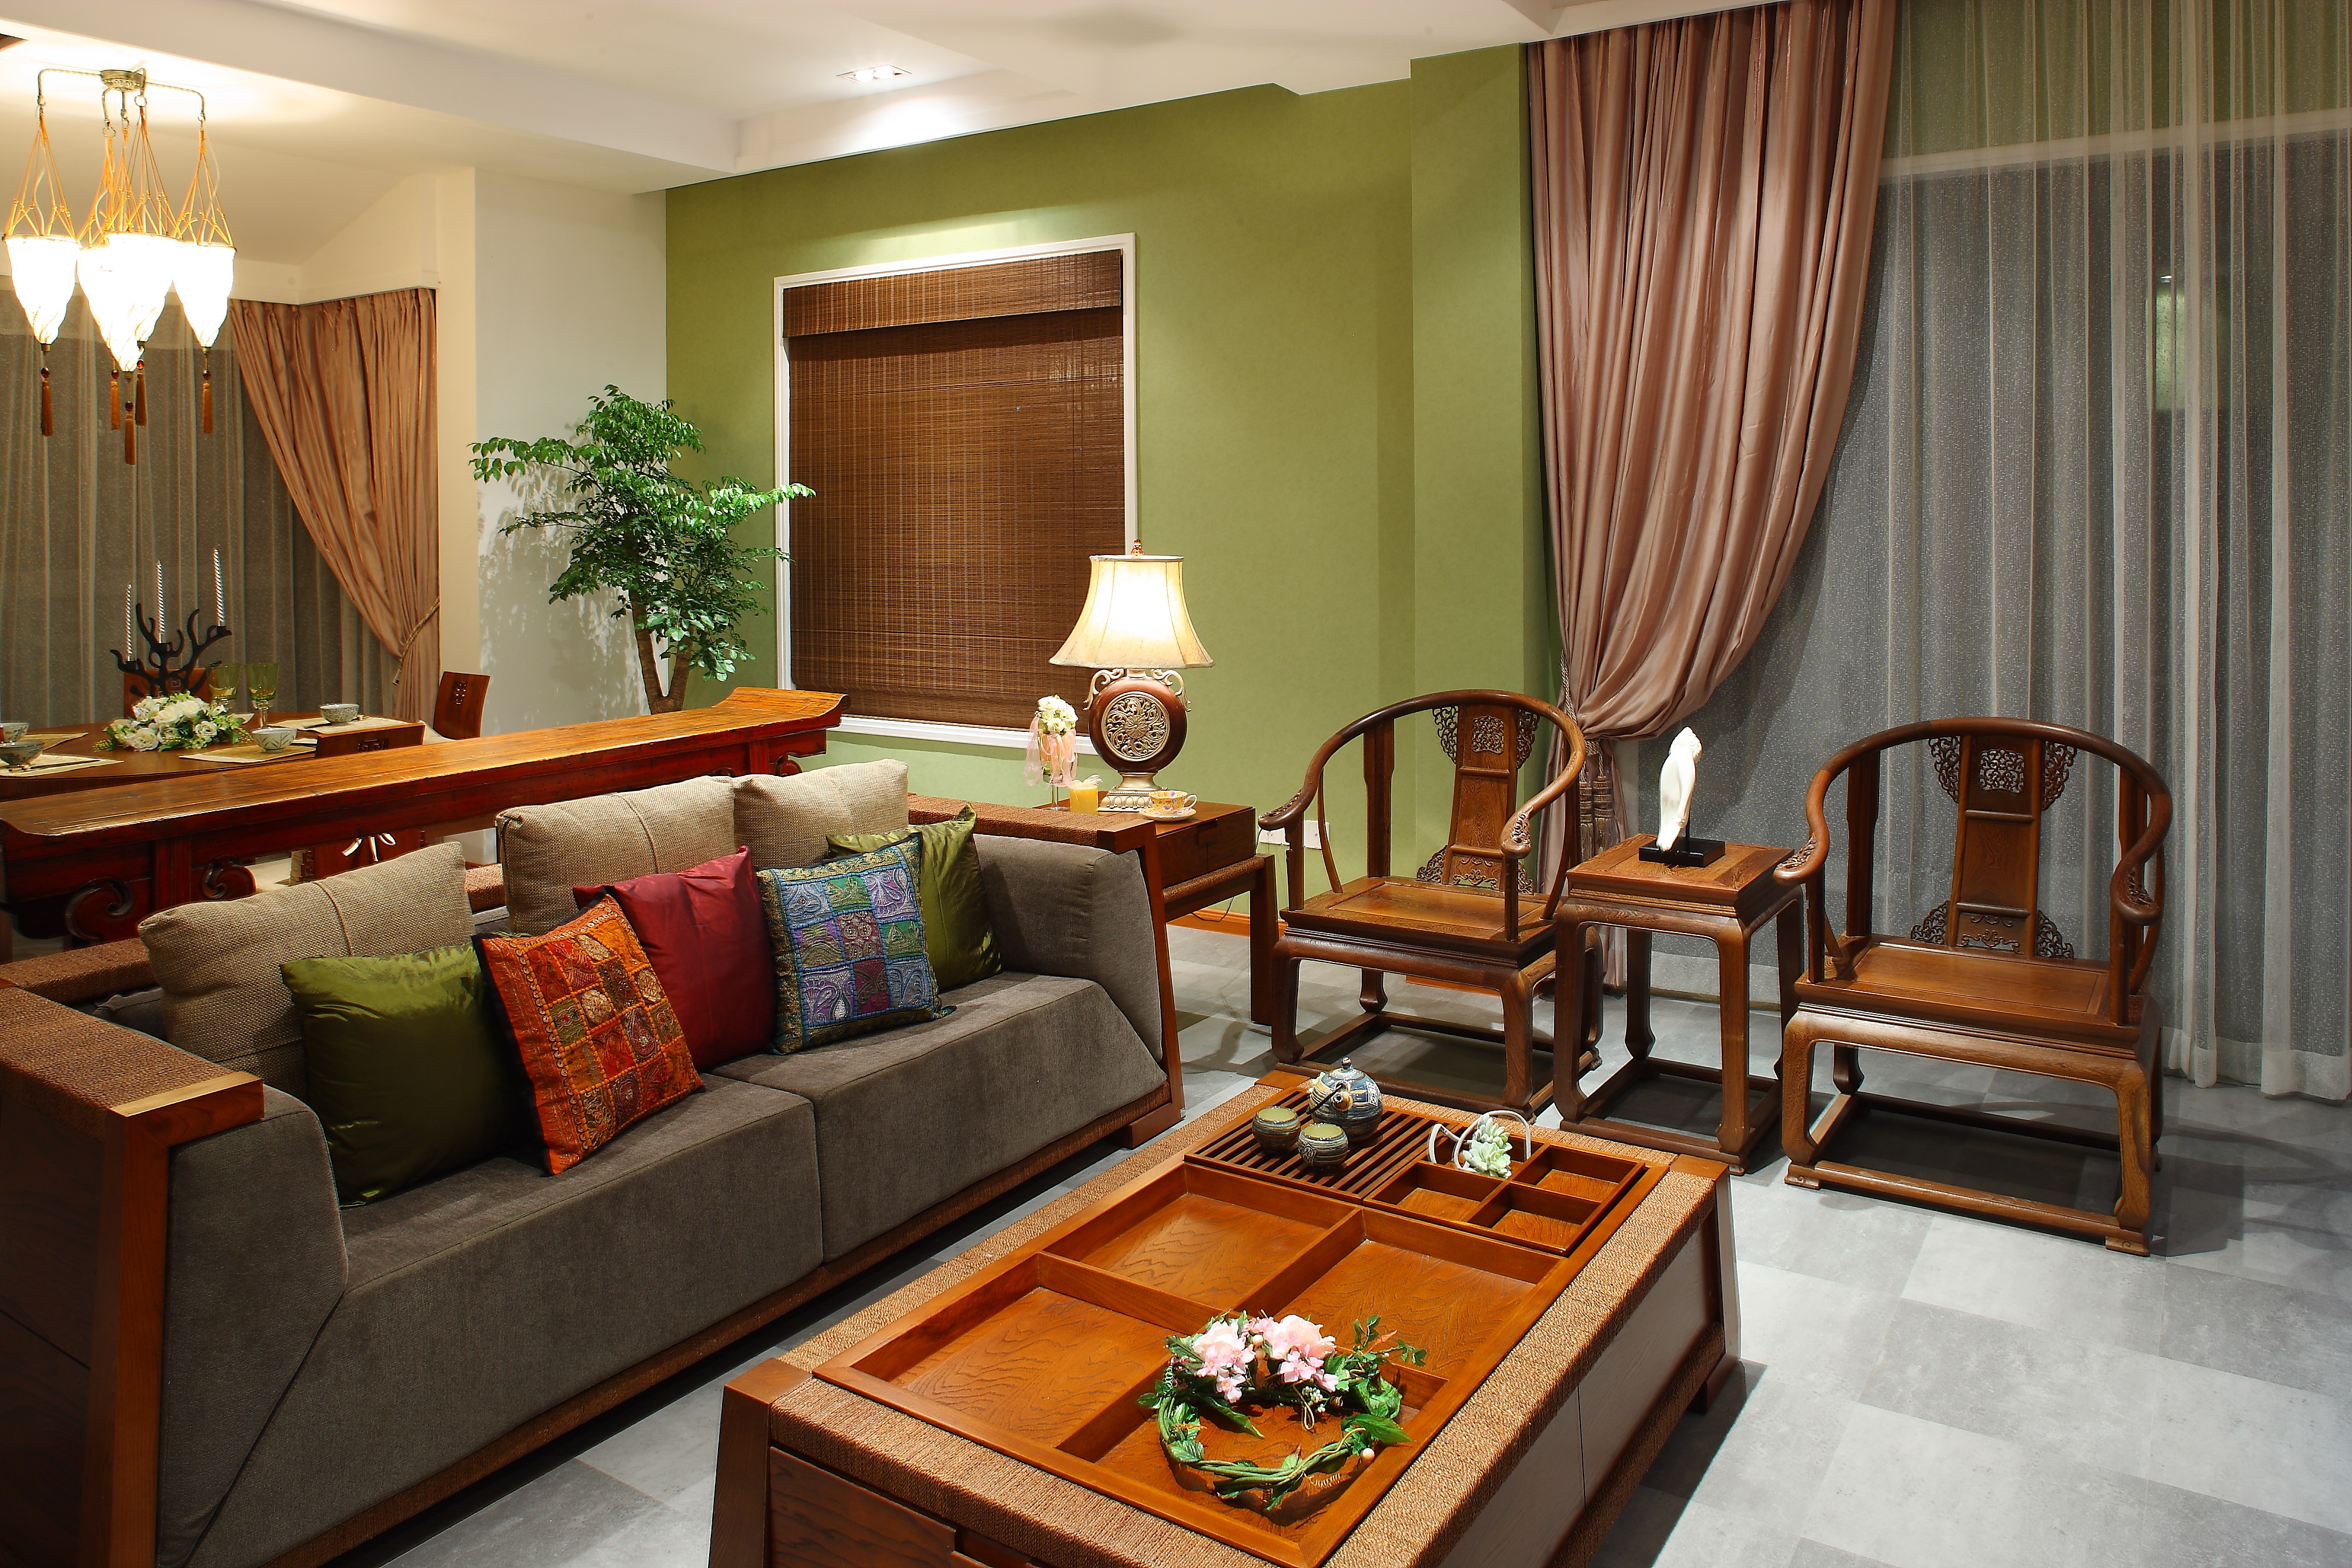 室内装修怎么搭配更好墨绿色沙发搭配装修效果图欣赏